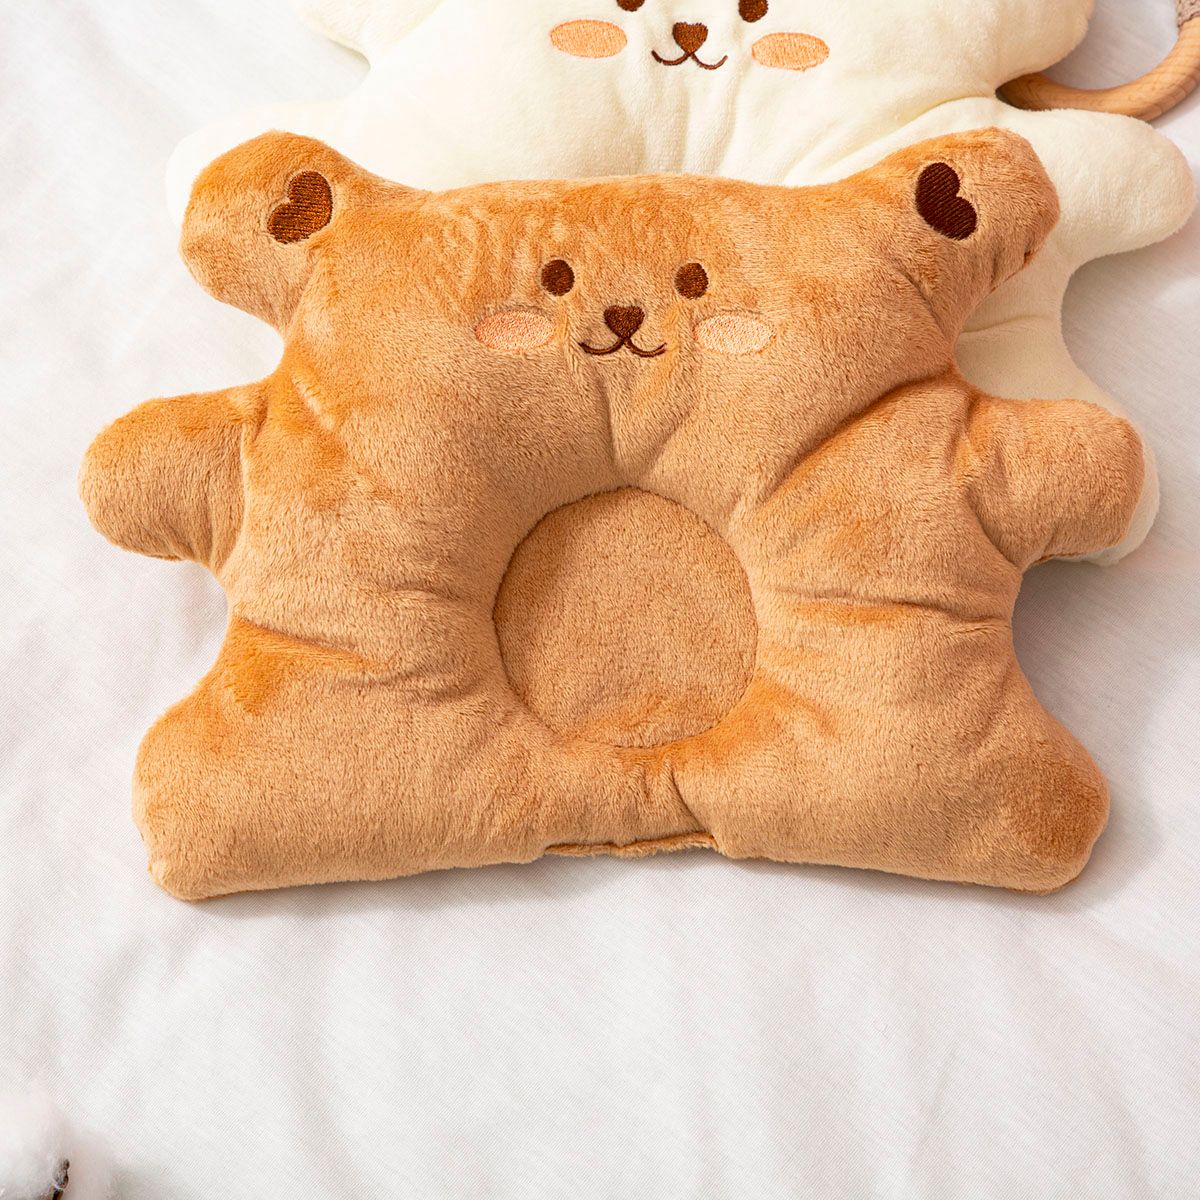 Baby Little Bear Shape Pillow